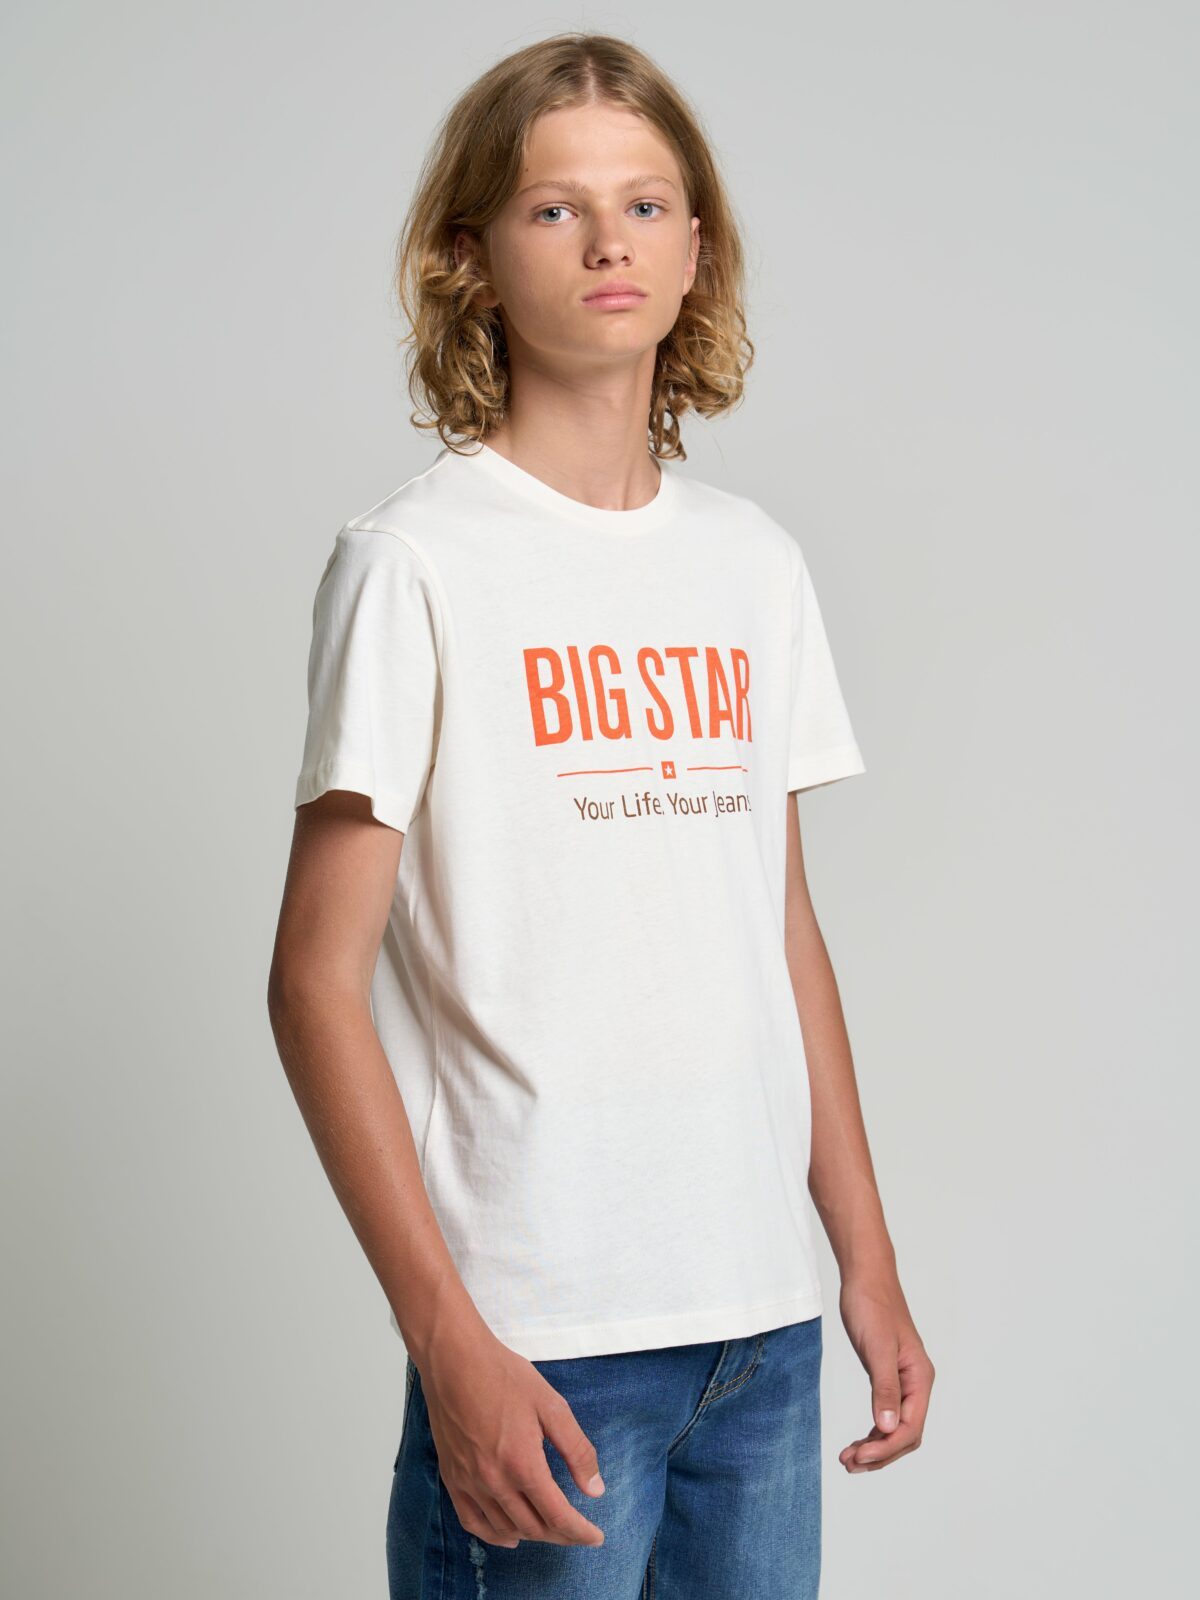 Big Star Kids's T-shirt